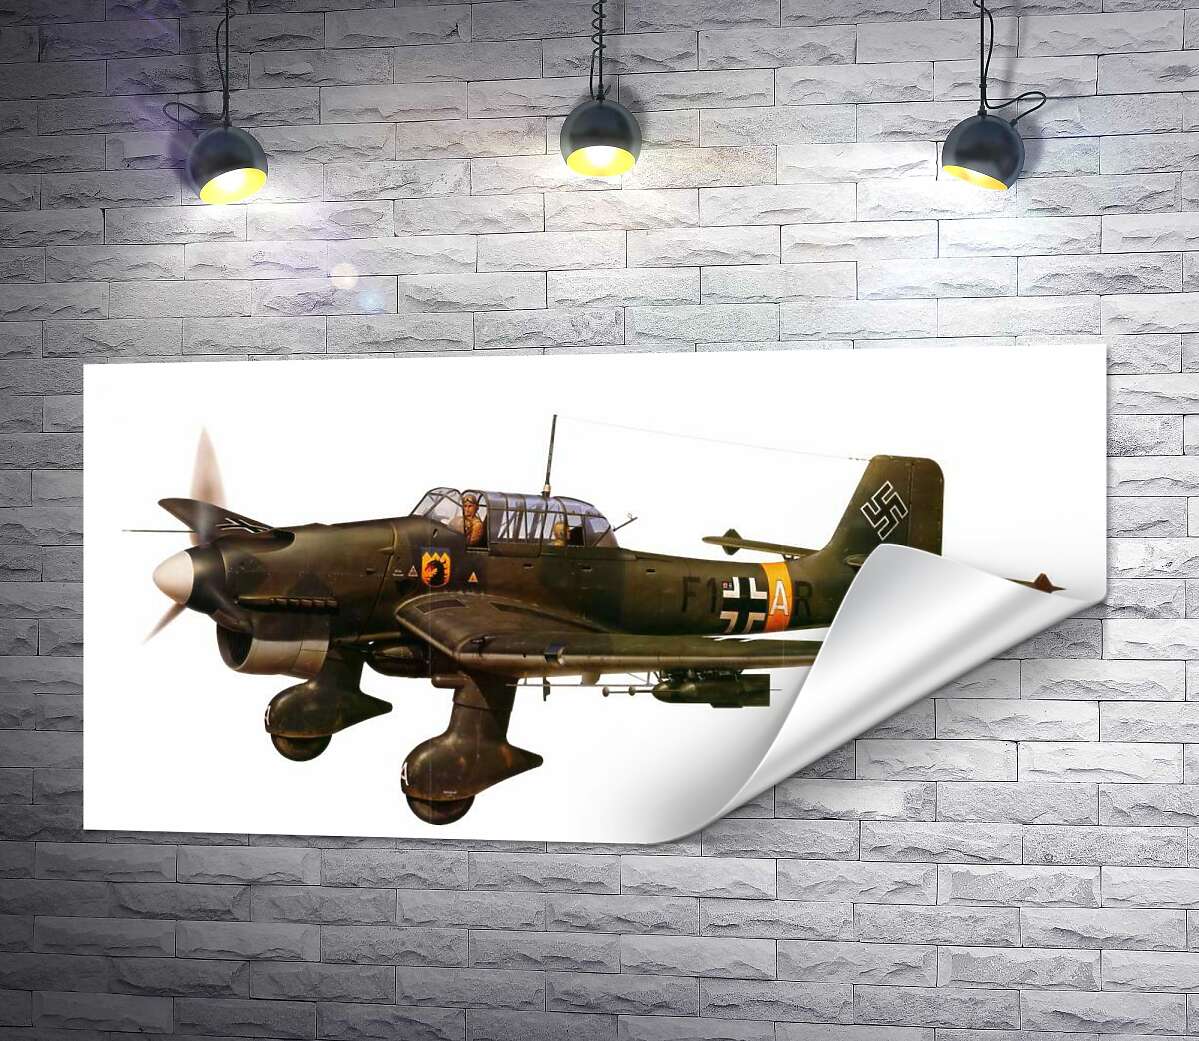 друк «Штука» (Junkers Ju 87) німецький пікіруючий бомбардувальник часів Другої світової війни